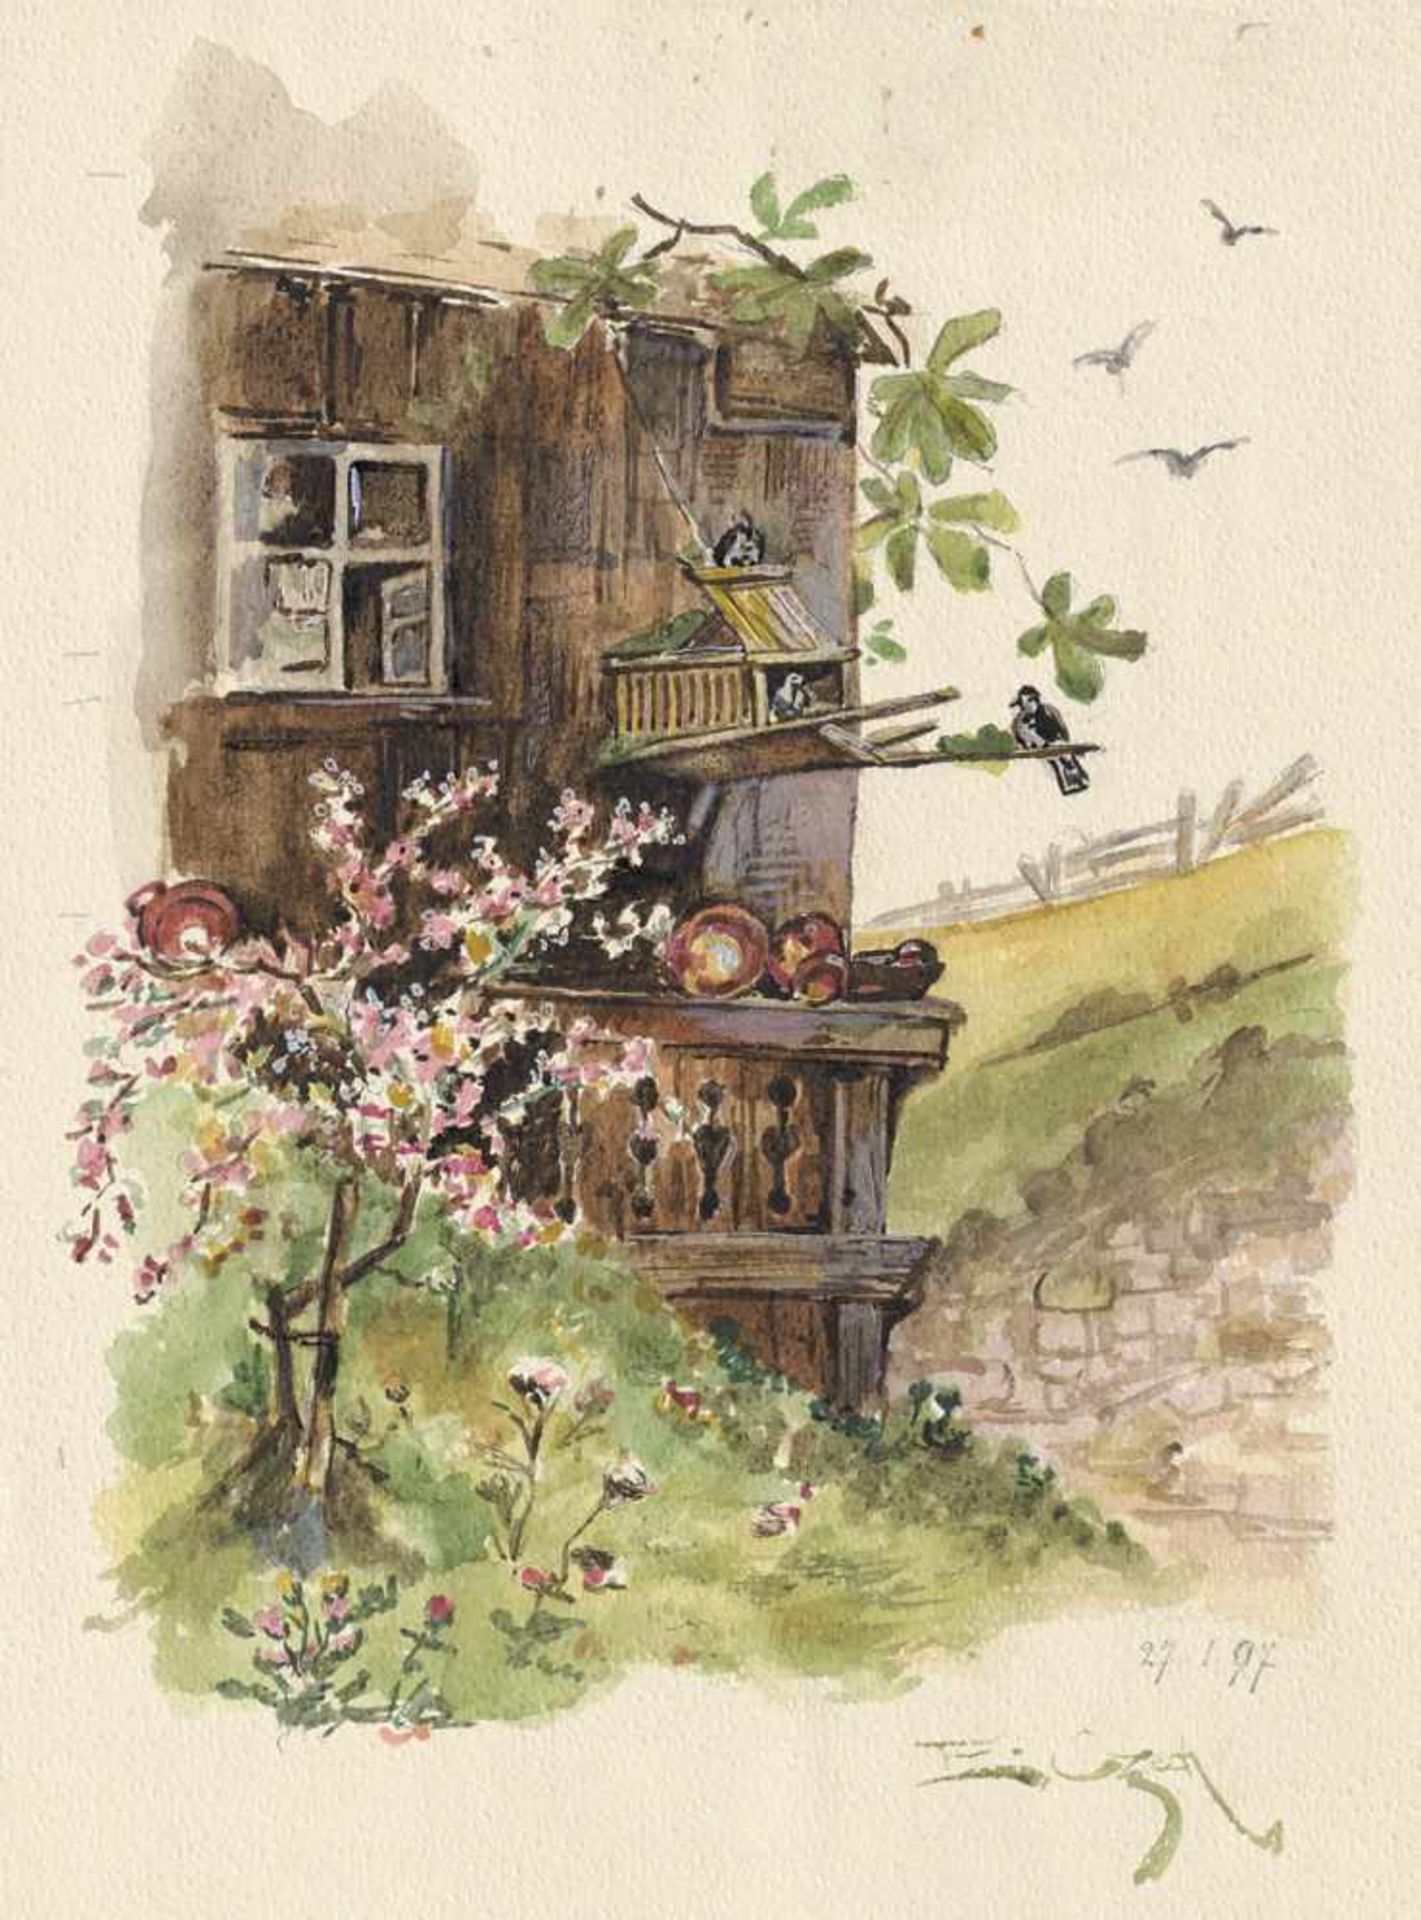 Czech, Emil: Hütte mit VogelkäfigHütte mit VogelkäfigAquarell auf Aquarellpapier. 1897.25 x 19,3 cm.